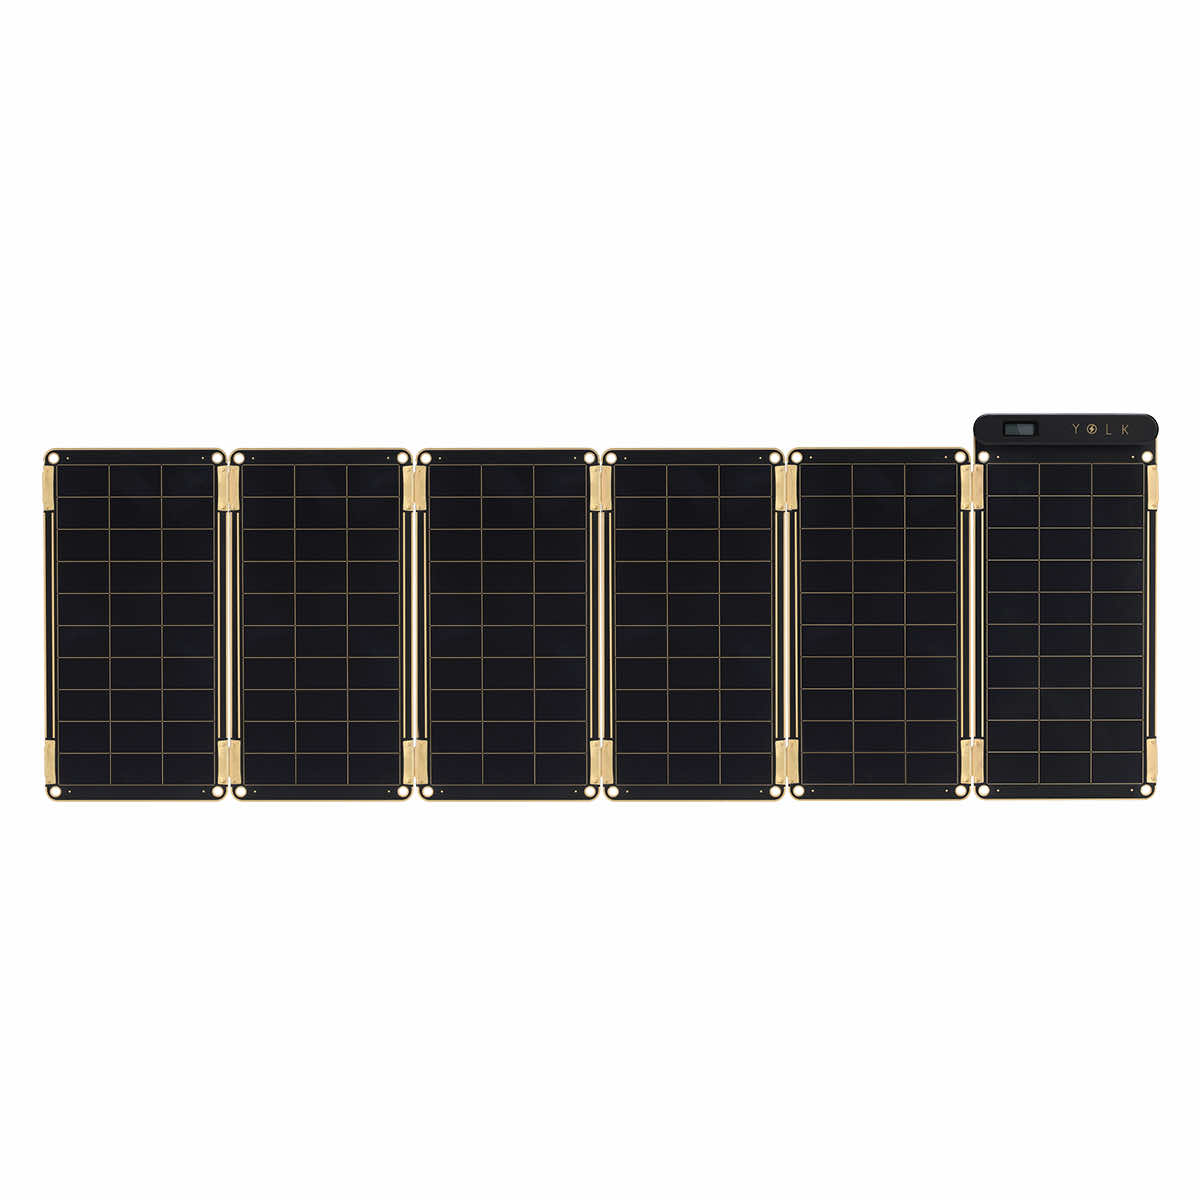 YOLK（ヨーク）の『Solar Paper(ソーラーペーパー）』は、太陽があれば発電できるソーラーパネルを使った充電器です。 太陽の下でパネルを開き、USBケーブルをつなげるだけで簡単に充電が開始されます。※曇りでも充電可能です。 機能性...